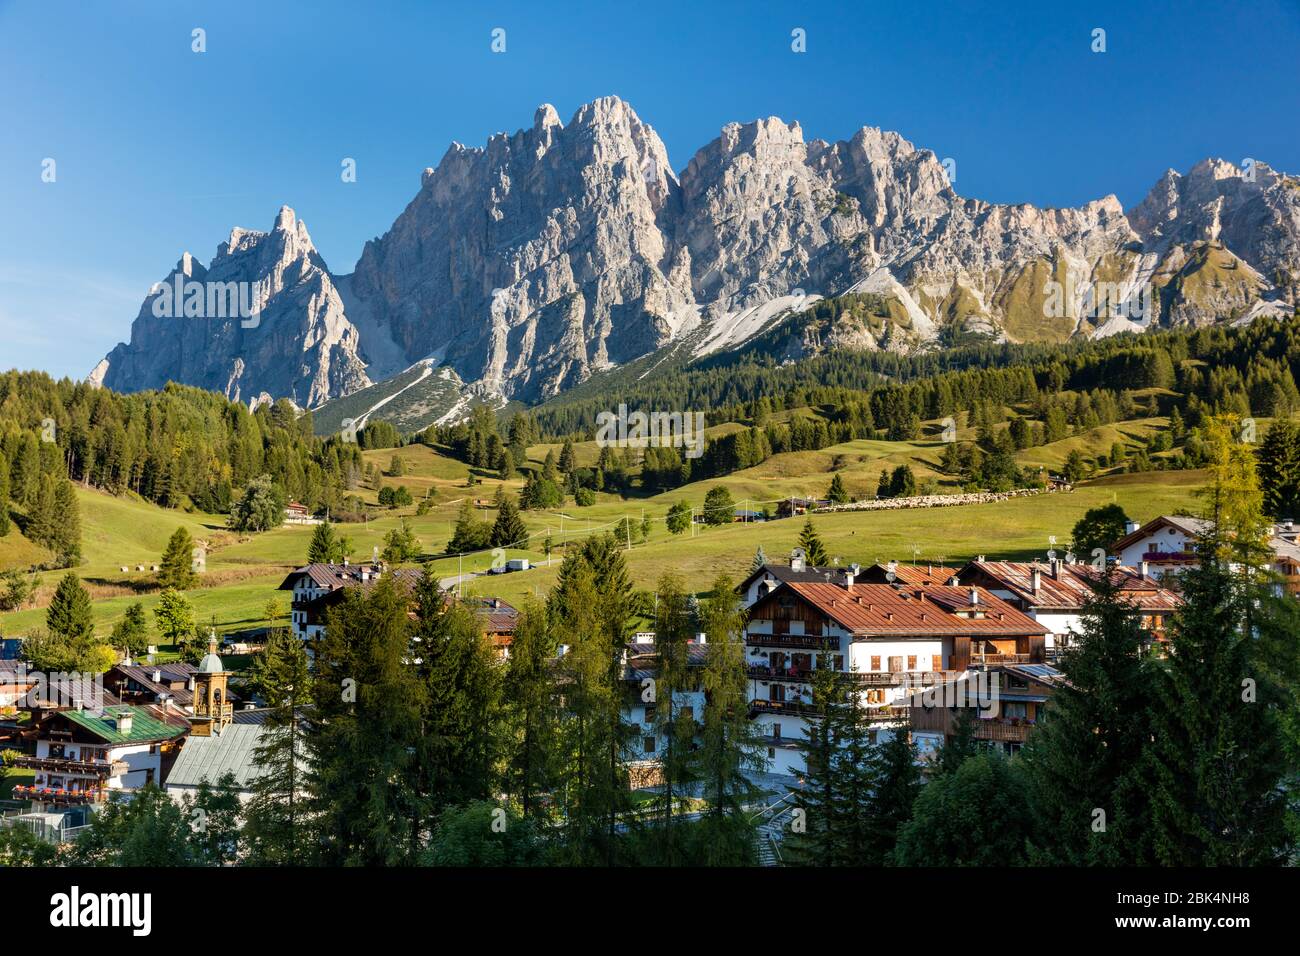 Monte Cristallo et les montagnes des Dolomites près de Cortina d'Ampezzo, Belluno, Italie Banque D'Images